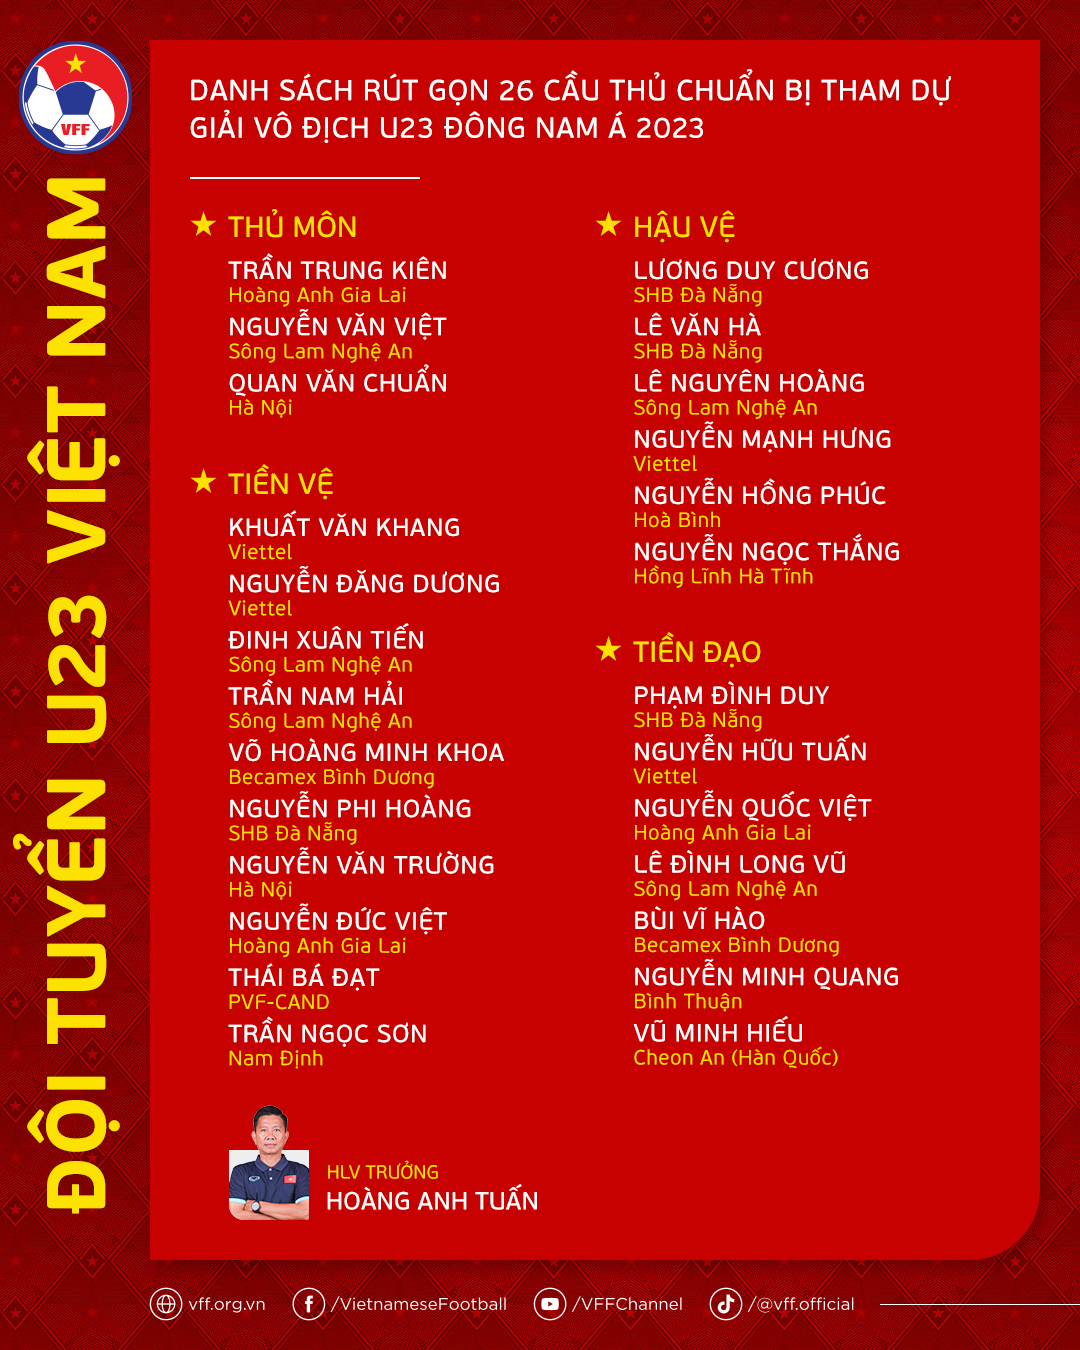 Danh sách rút gọn 26 cầu thủ U23 Việt Nam. Ảnh: VFF